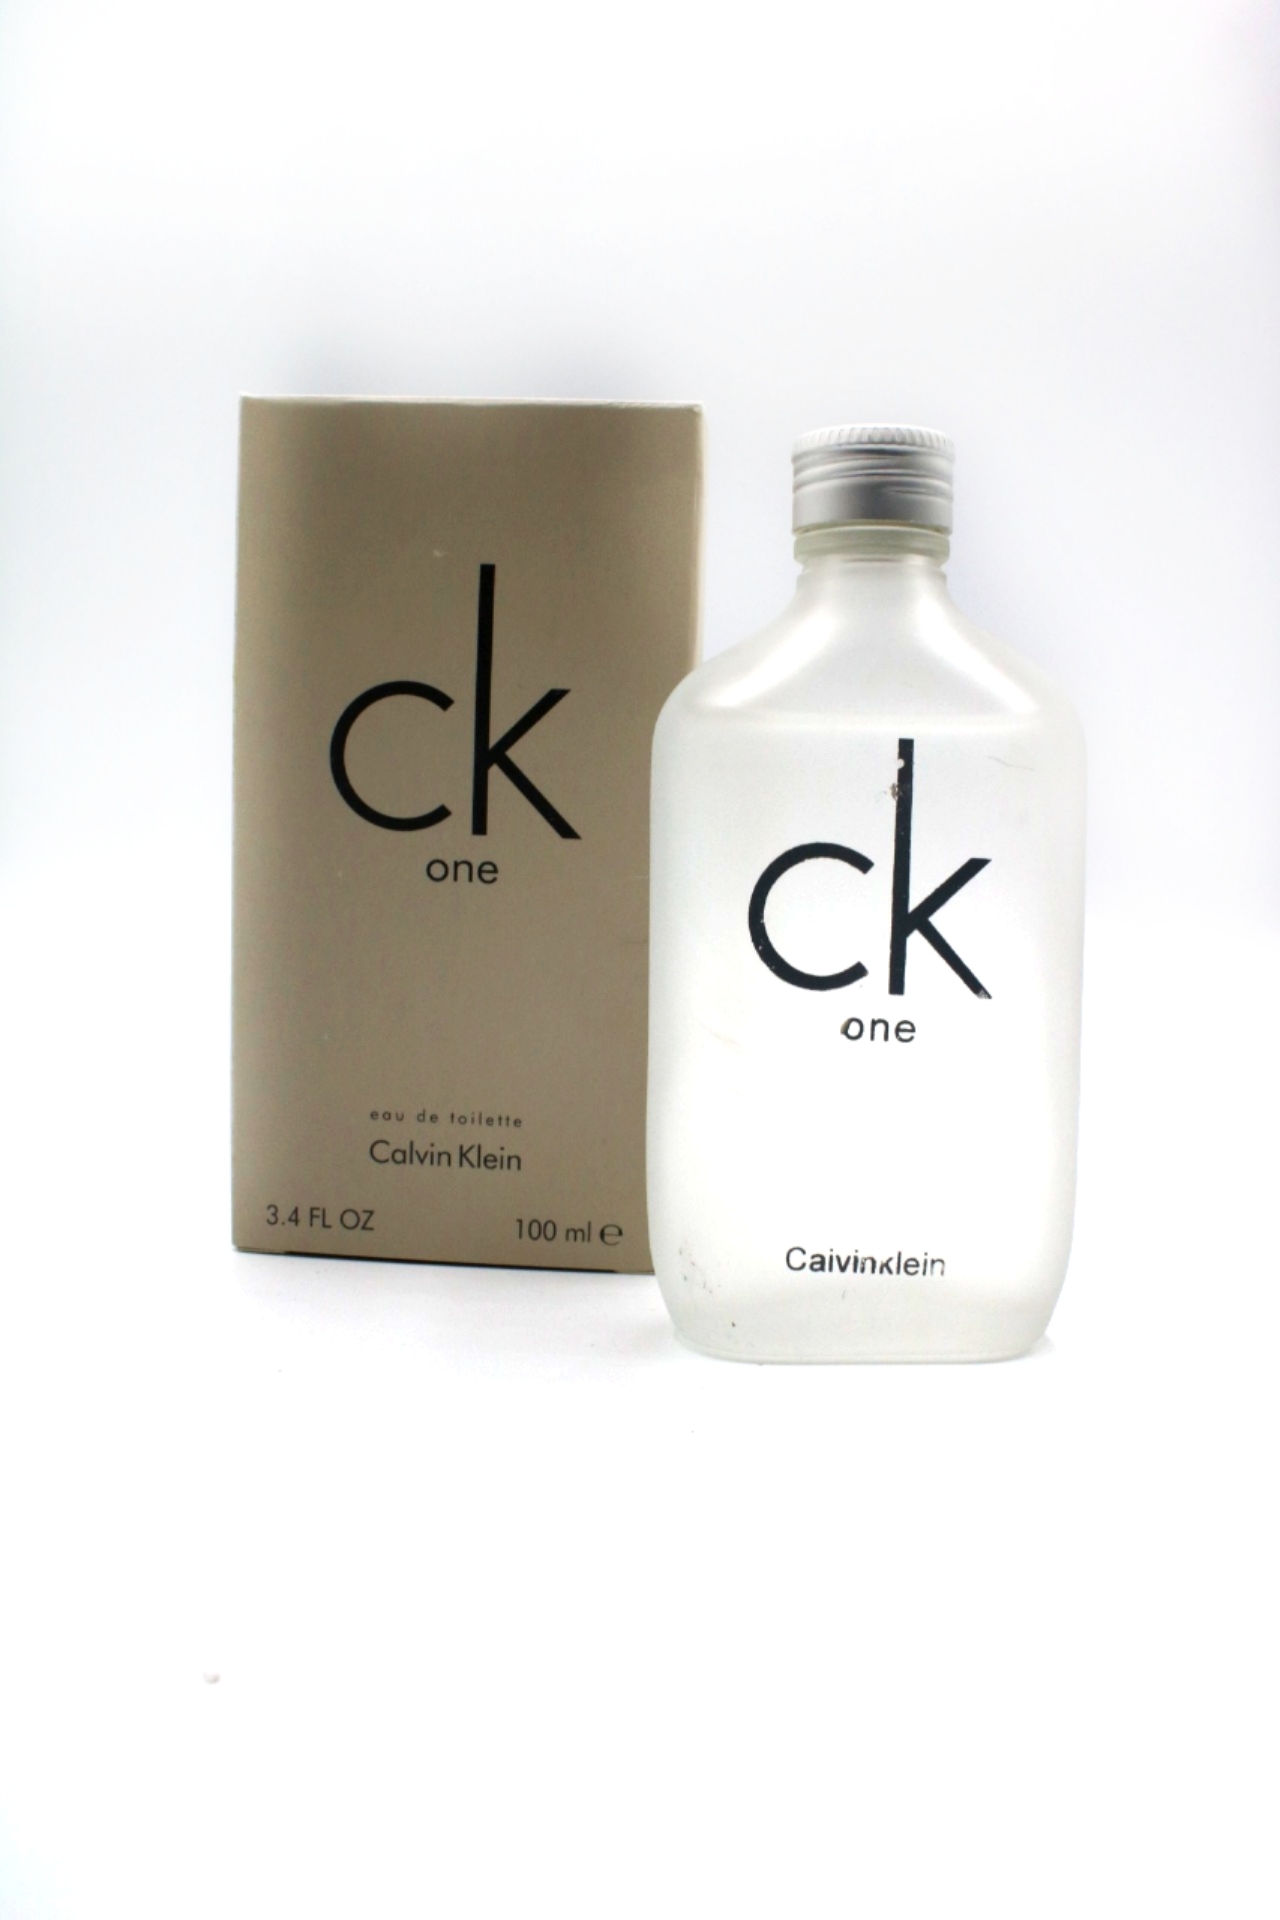 CK One Perfume 100ml